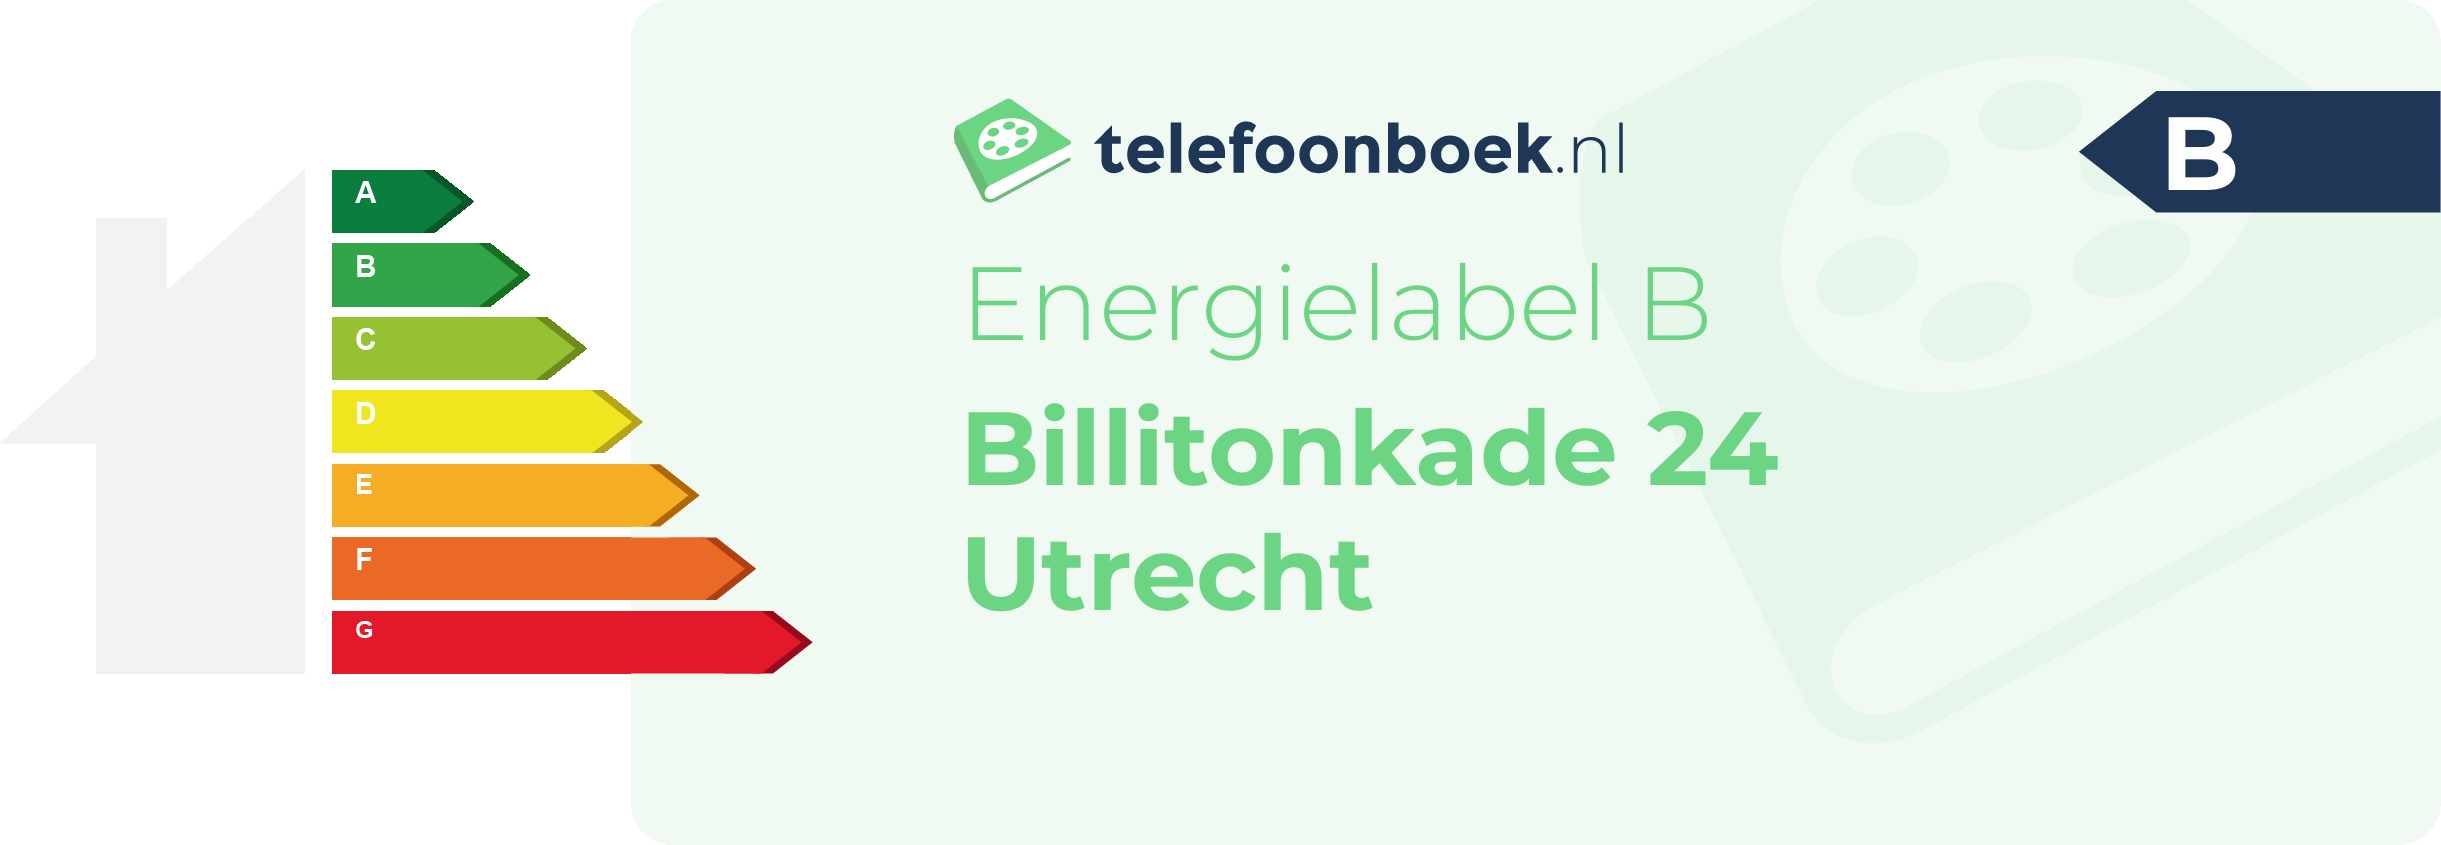 Energielabel Billitonkade 24 Utrecht